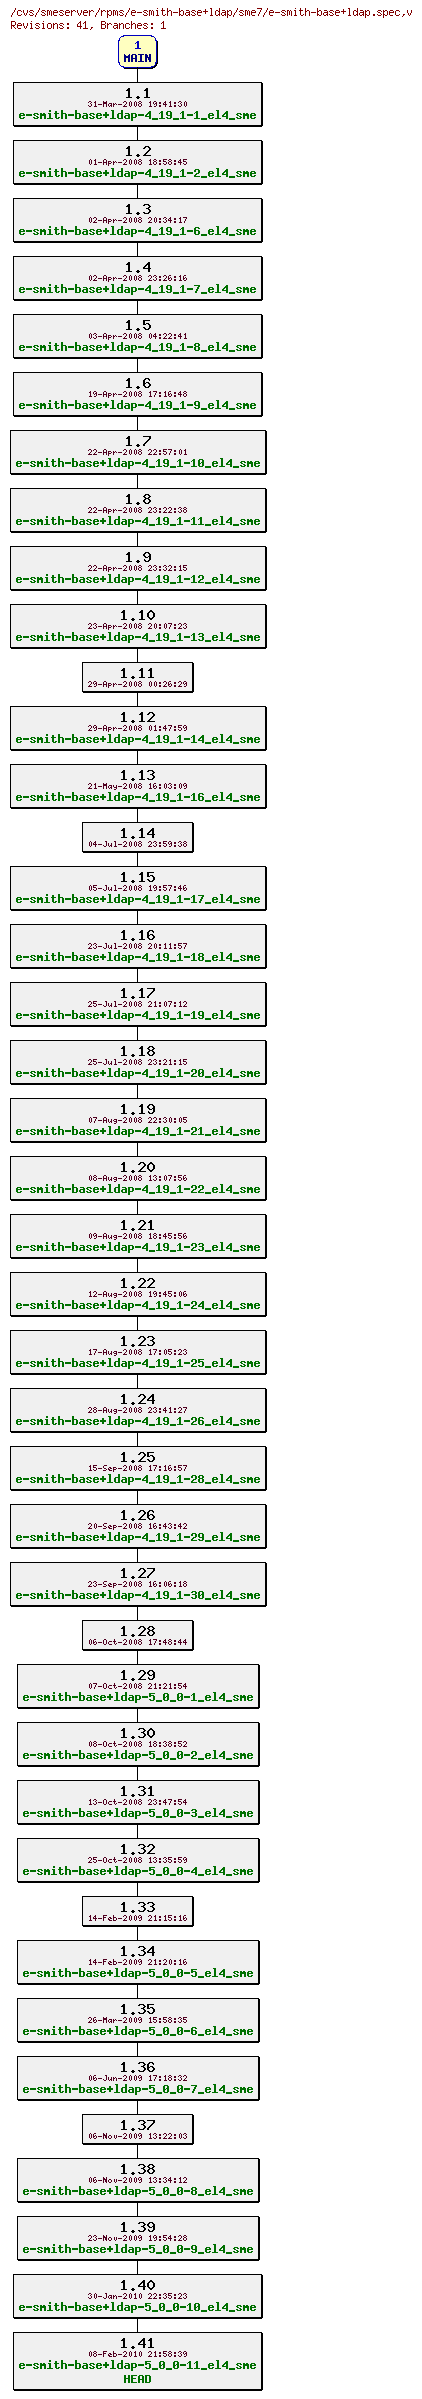 Revisions of rpms/e-smith-base+ldap/sme7/e-smith-base+ldap.spec